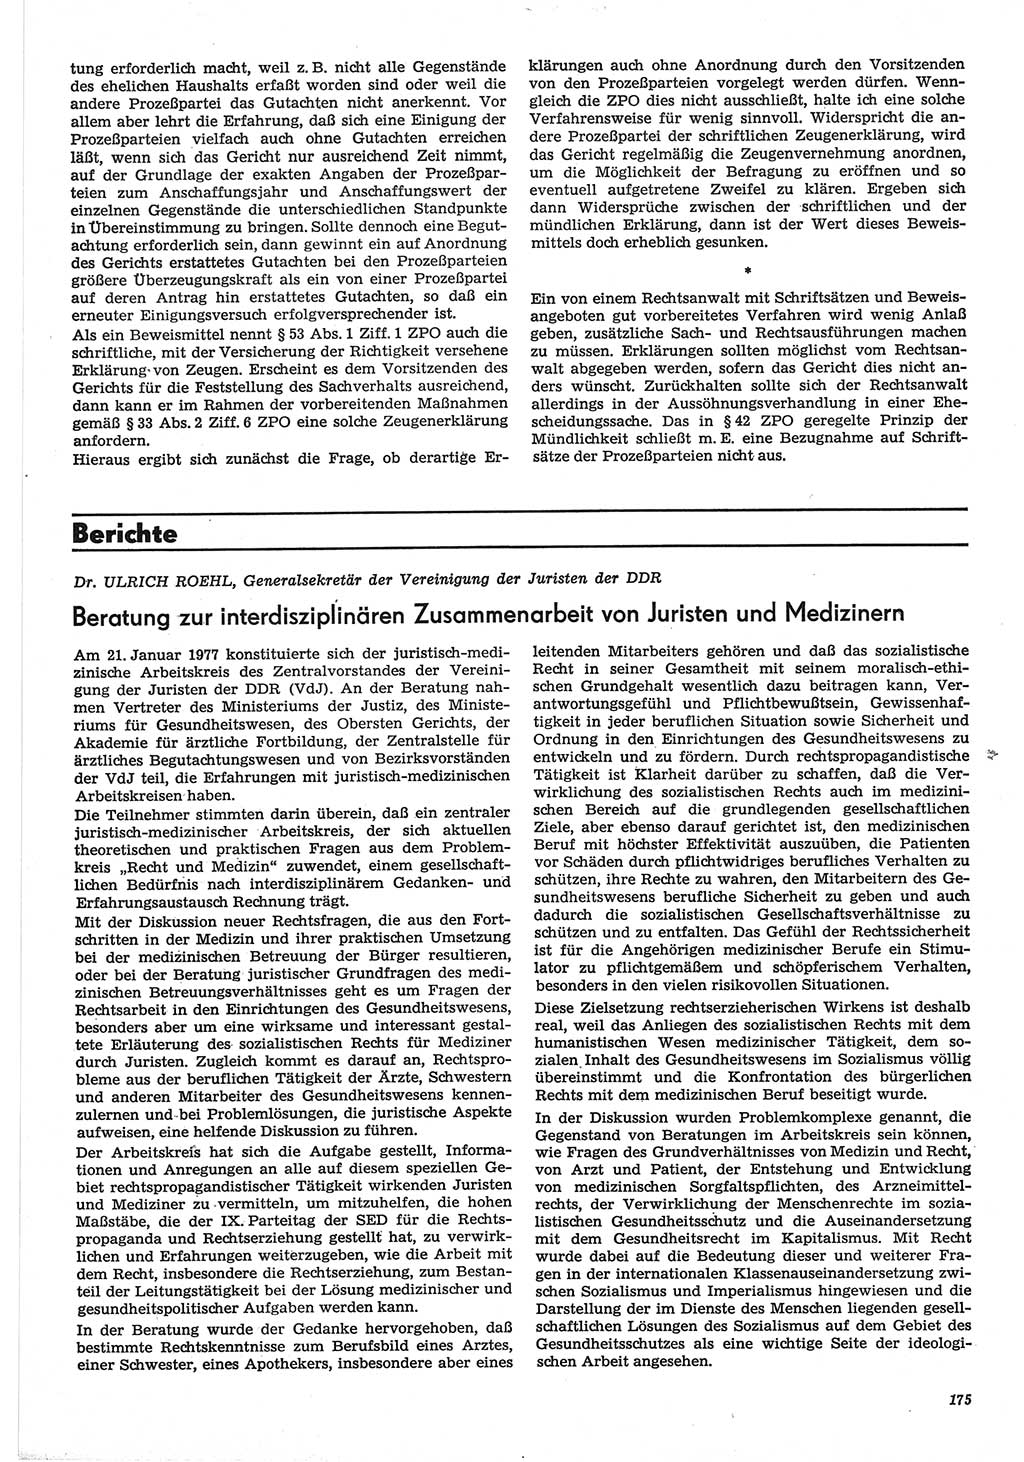 Neue Justiz (NJ), Zeitschrift für Recht und Rechtswissenschaft-Zeitschrift, sozialistisches Recht und Gesetzlichkeit, 31. Jahrgang 1977, Seite 175 (NJ DDR 1977, S. 175)